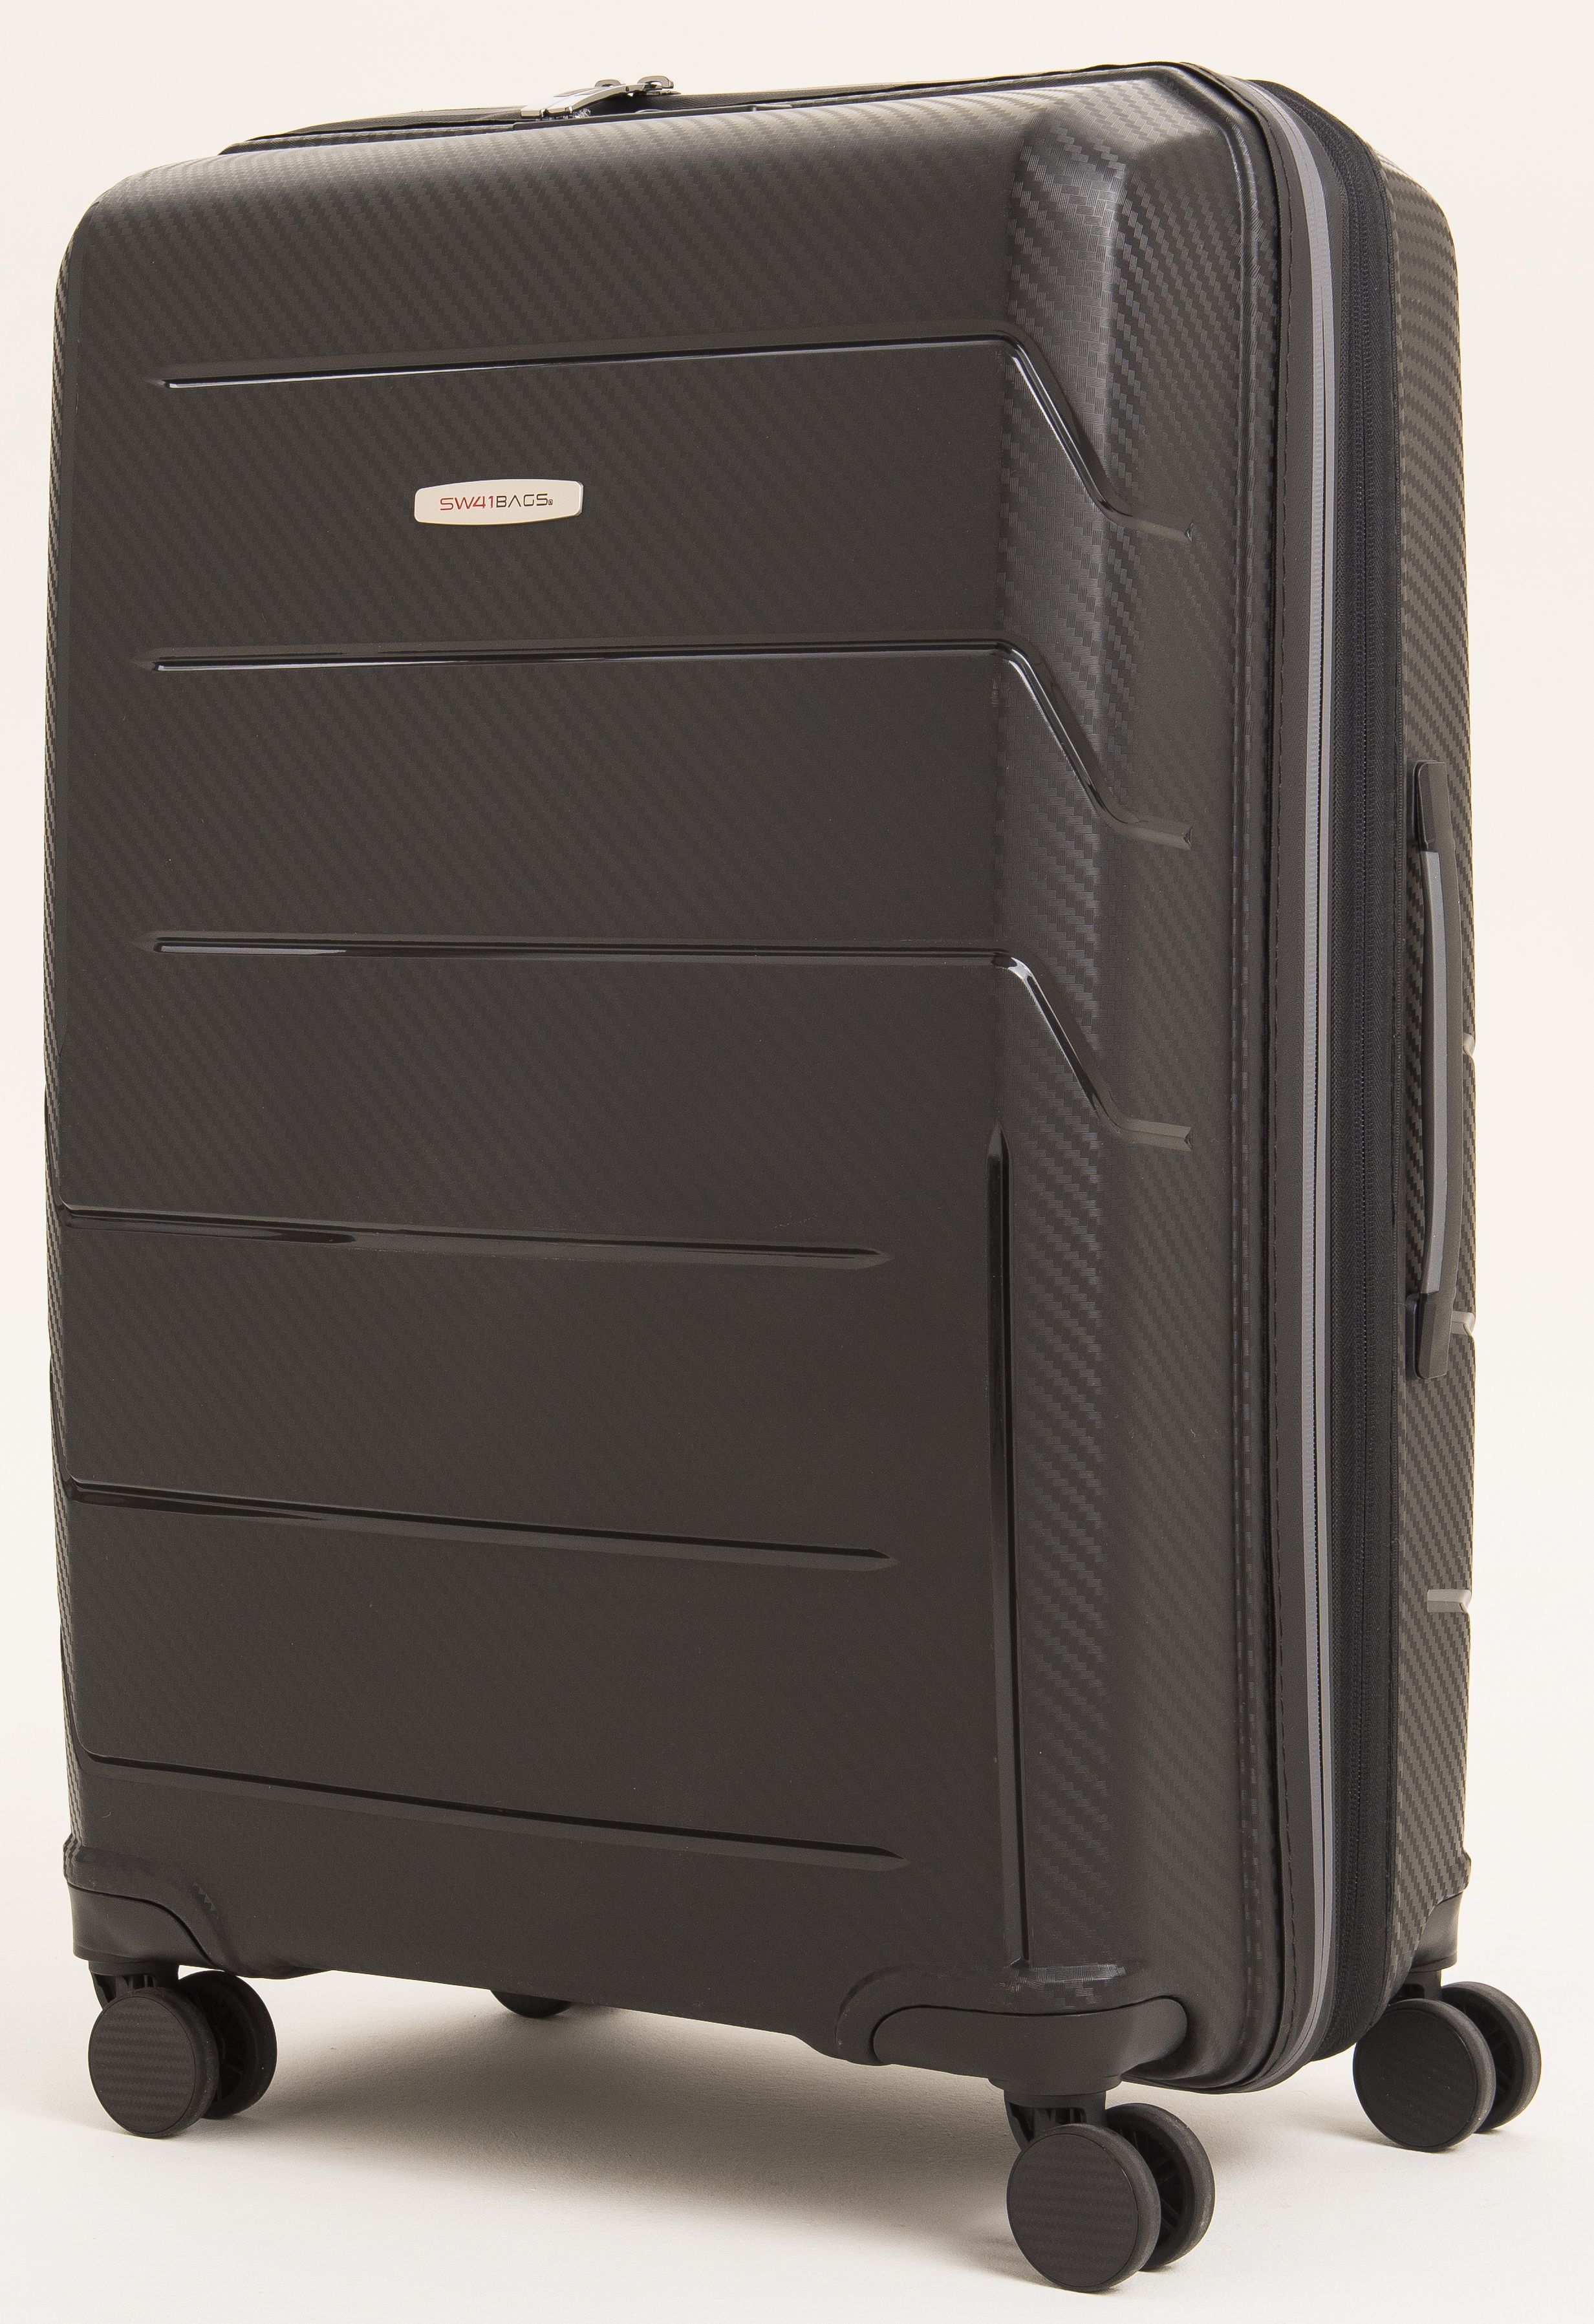 Oxygen - Grösse M erweiterbar 67 cm - Swissbags: Travel Bags, Luggage,  Accessories - Vouvry, Switzerland - Travel Bags, Luggage, Accessories -  Vouvry, Switzerland